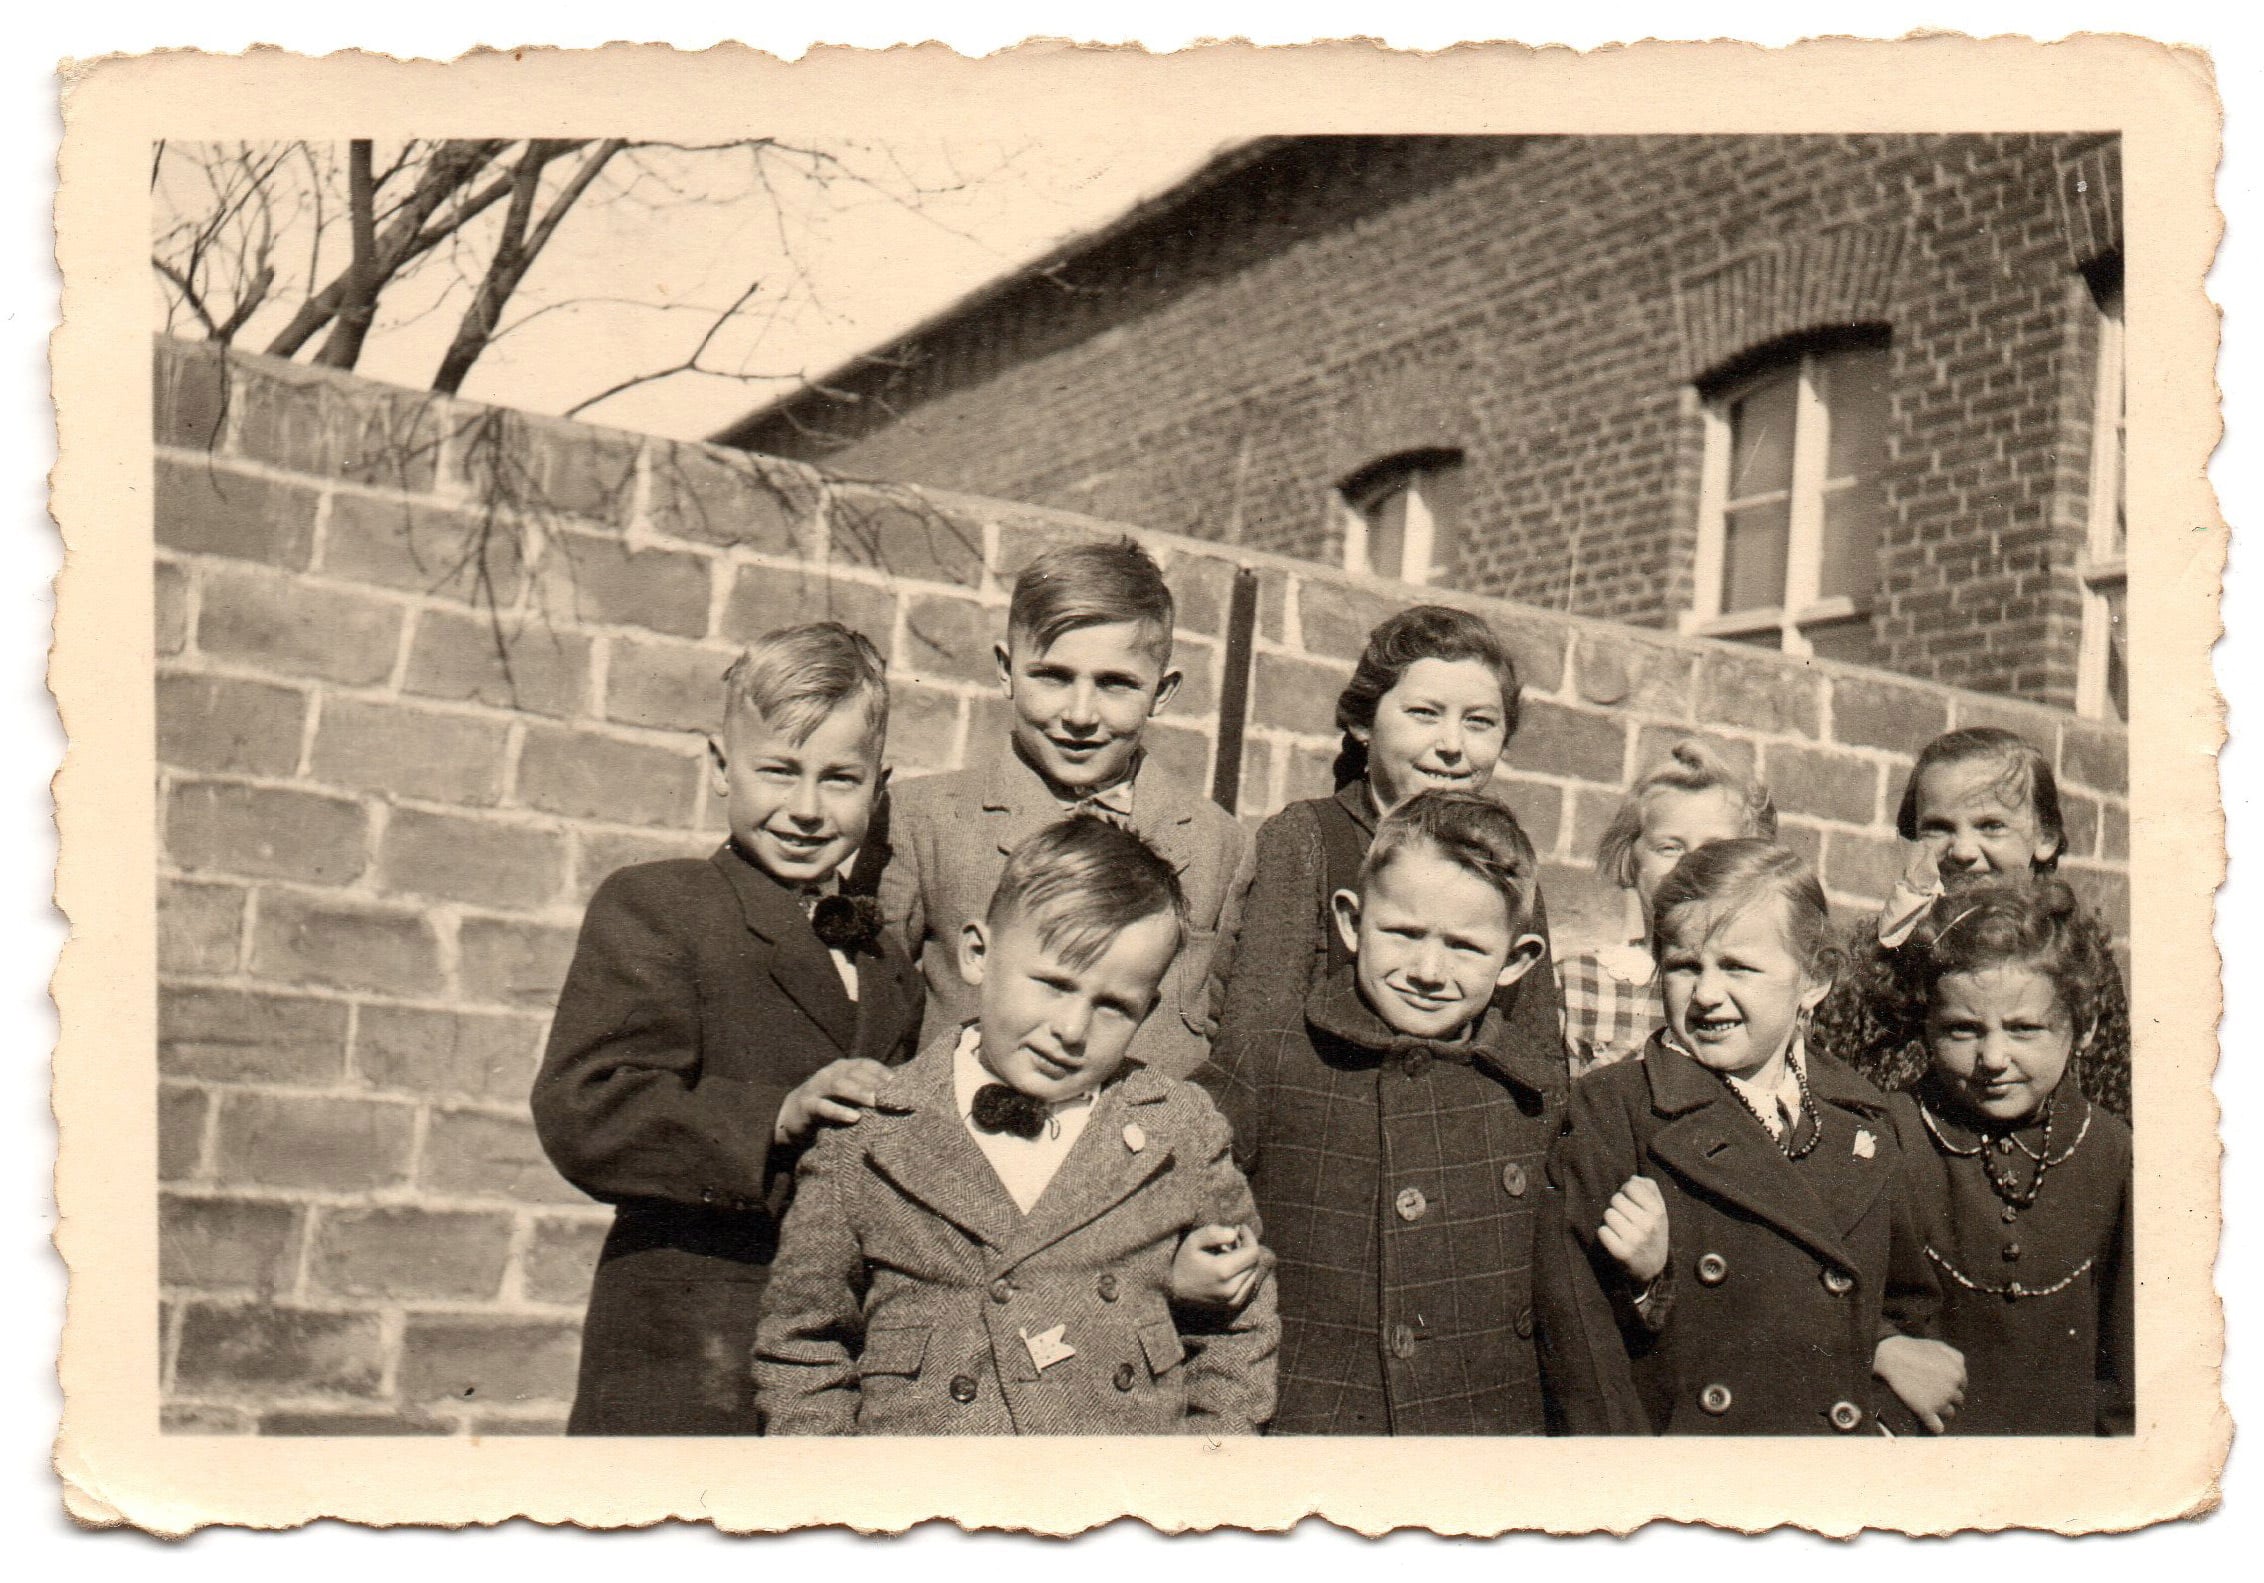 Schulklasse von Wittbrietzen etwa 1943 vermutlich nach Zeugnisausgabe